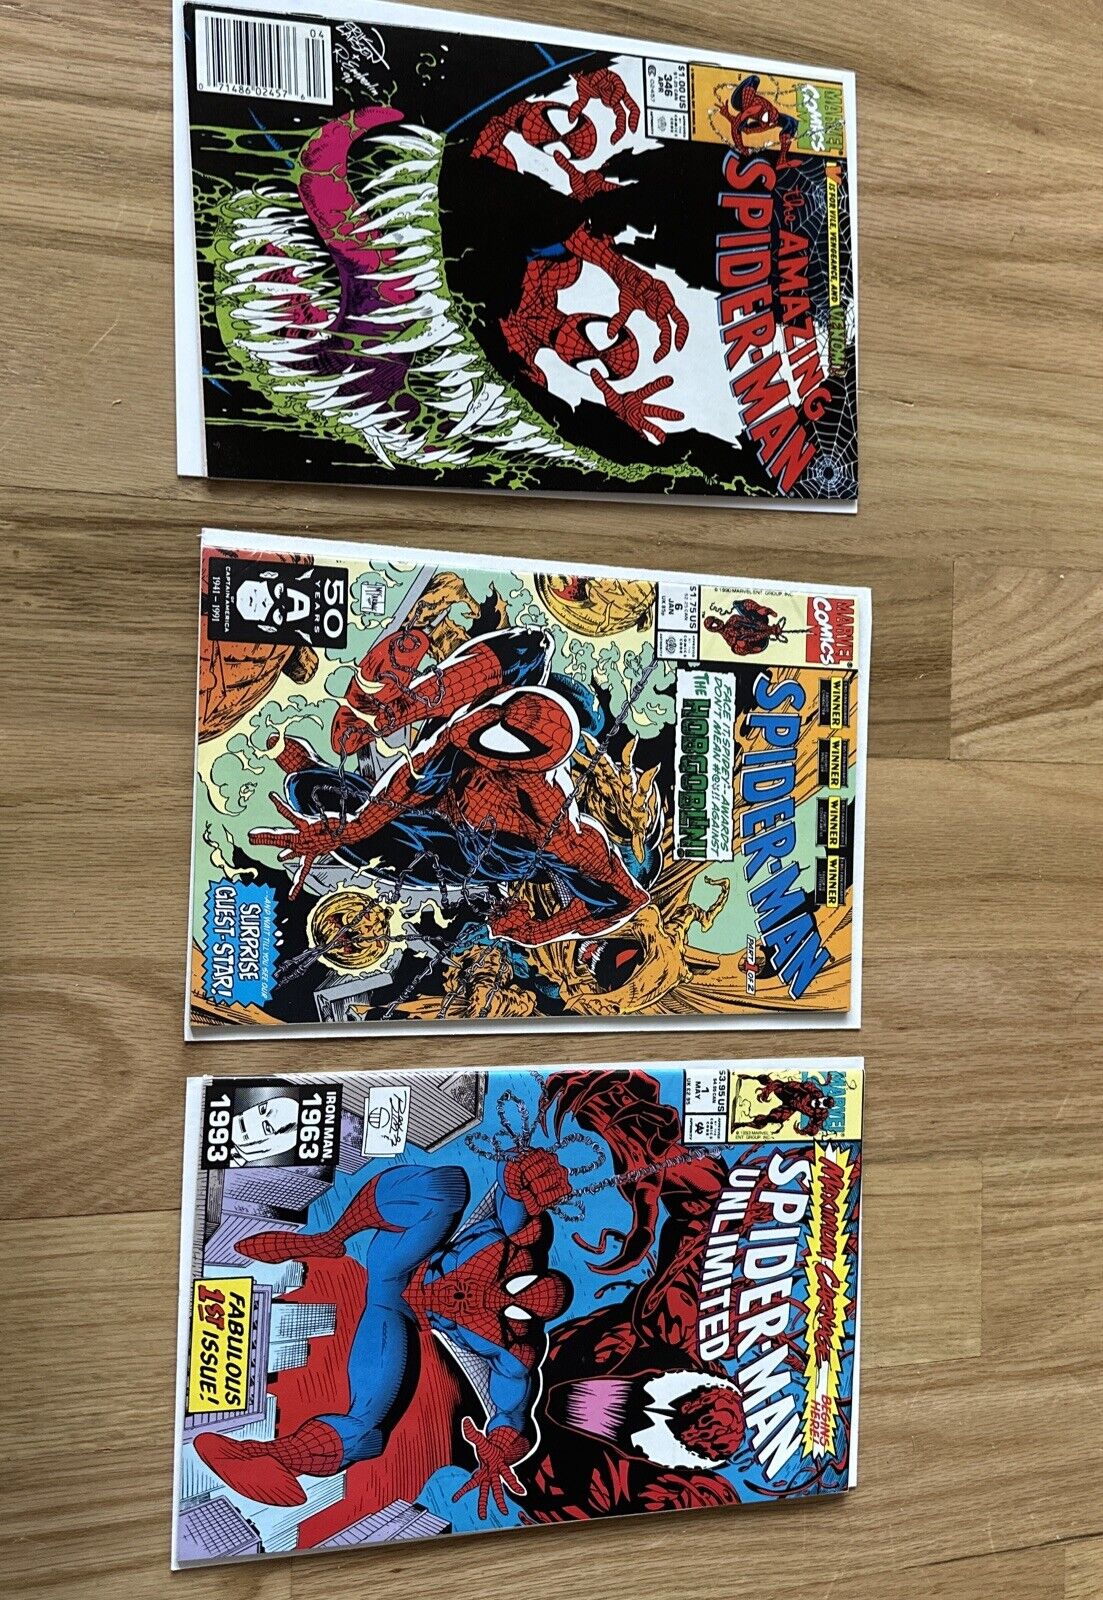 SPIDER-MAN UNLIMITED #1, Spider-man #6, & The Amazing Spider-Man 346 Newsstand